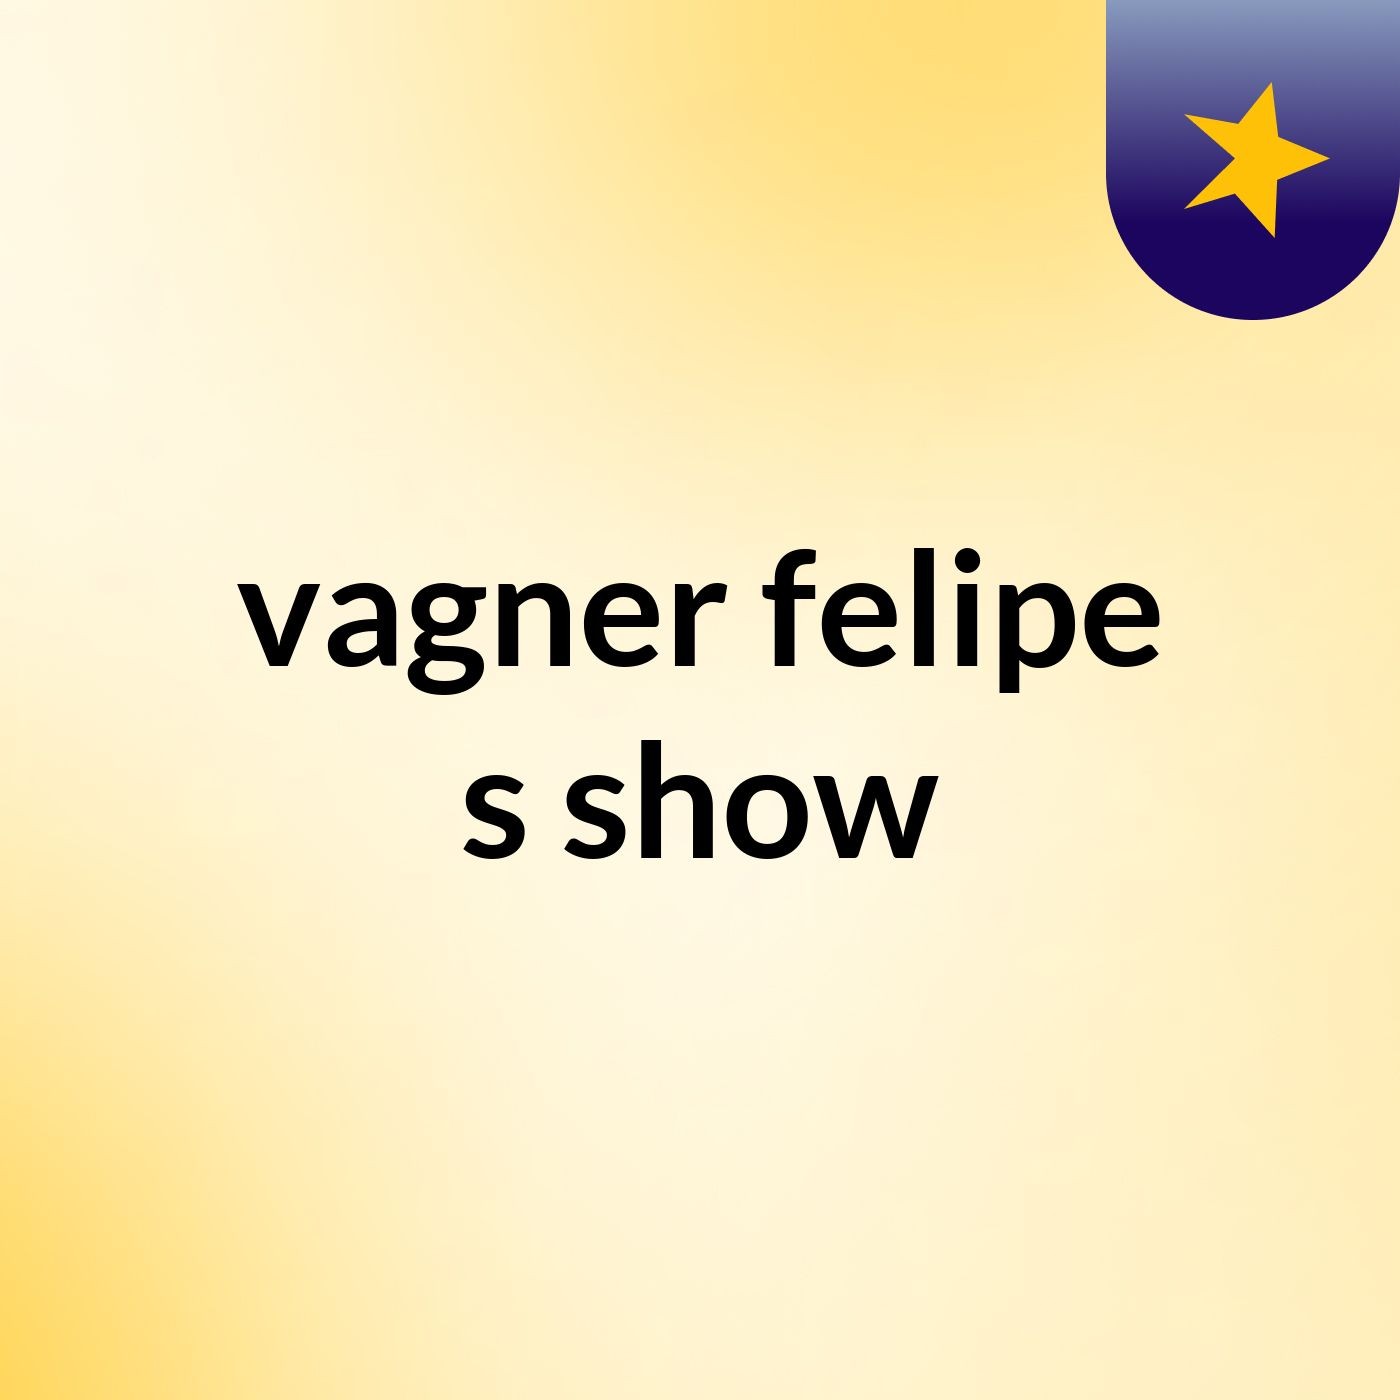 vagner felipe's show